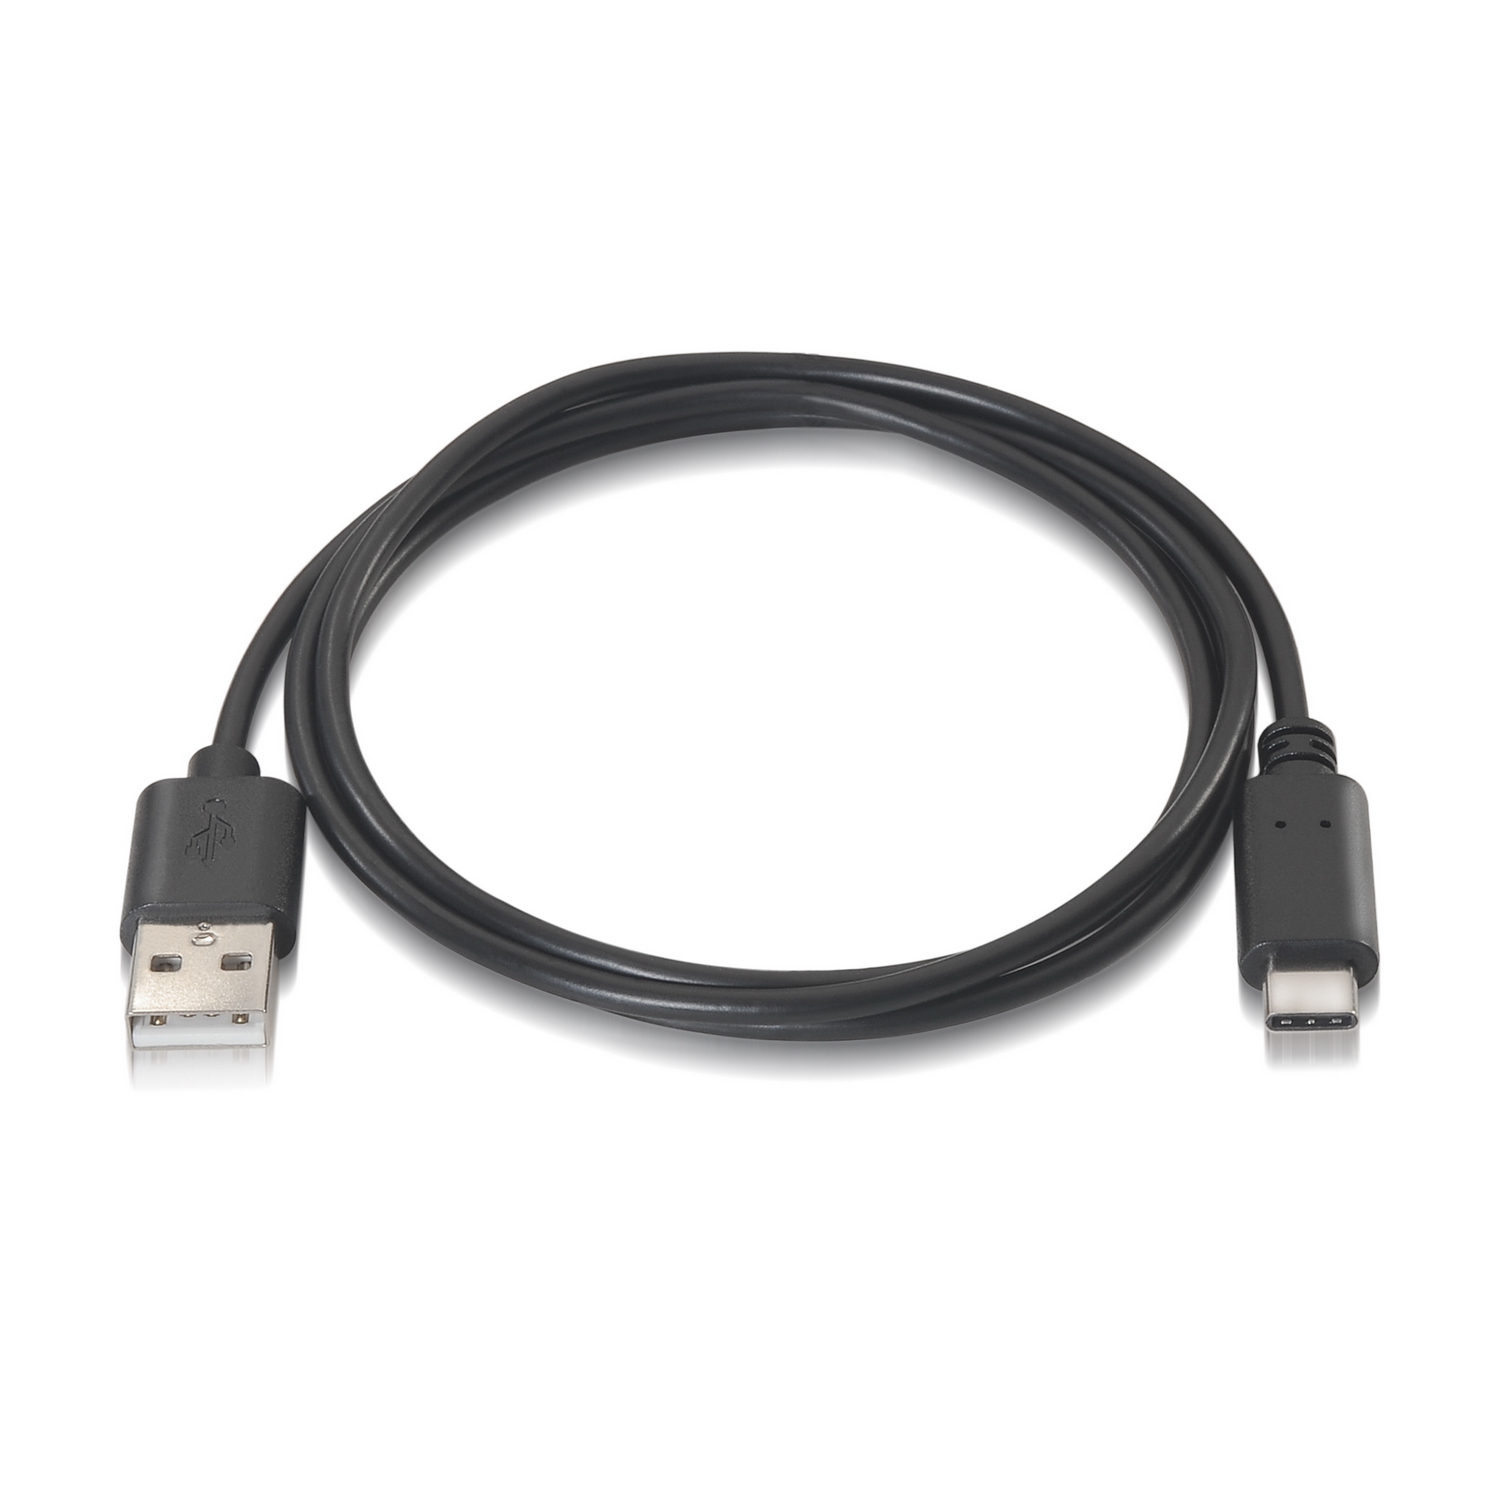 CABLE USB A TIPO C (Carga Rápida), Sin Marca en Colombia desde $7.140